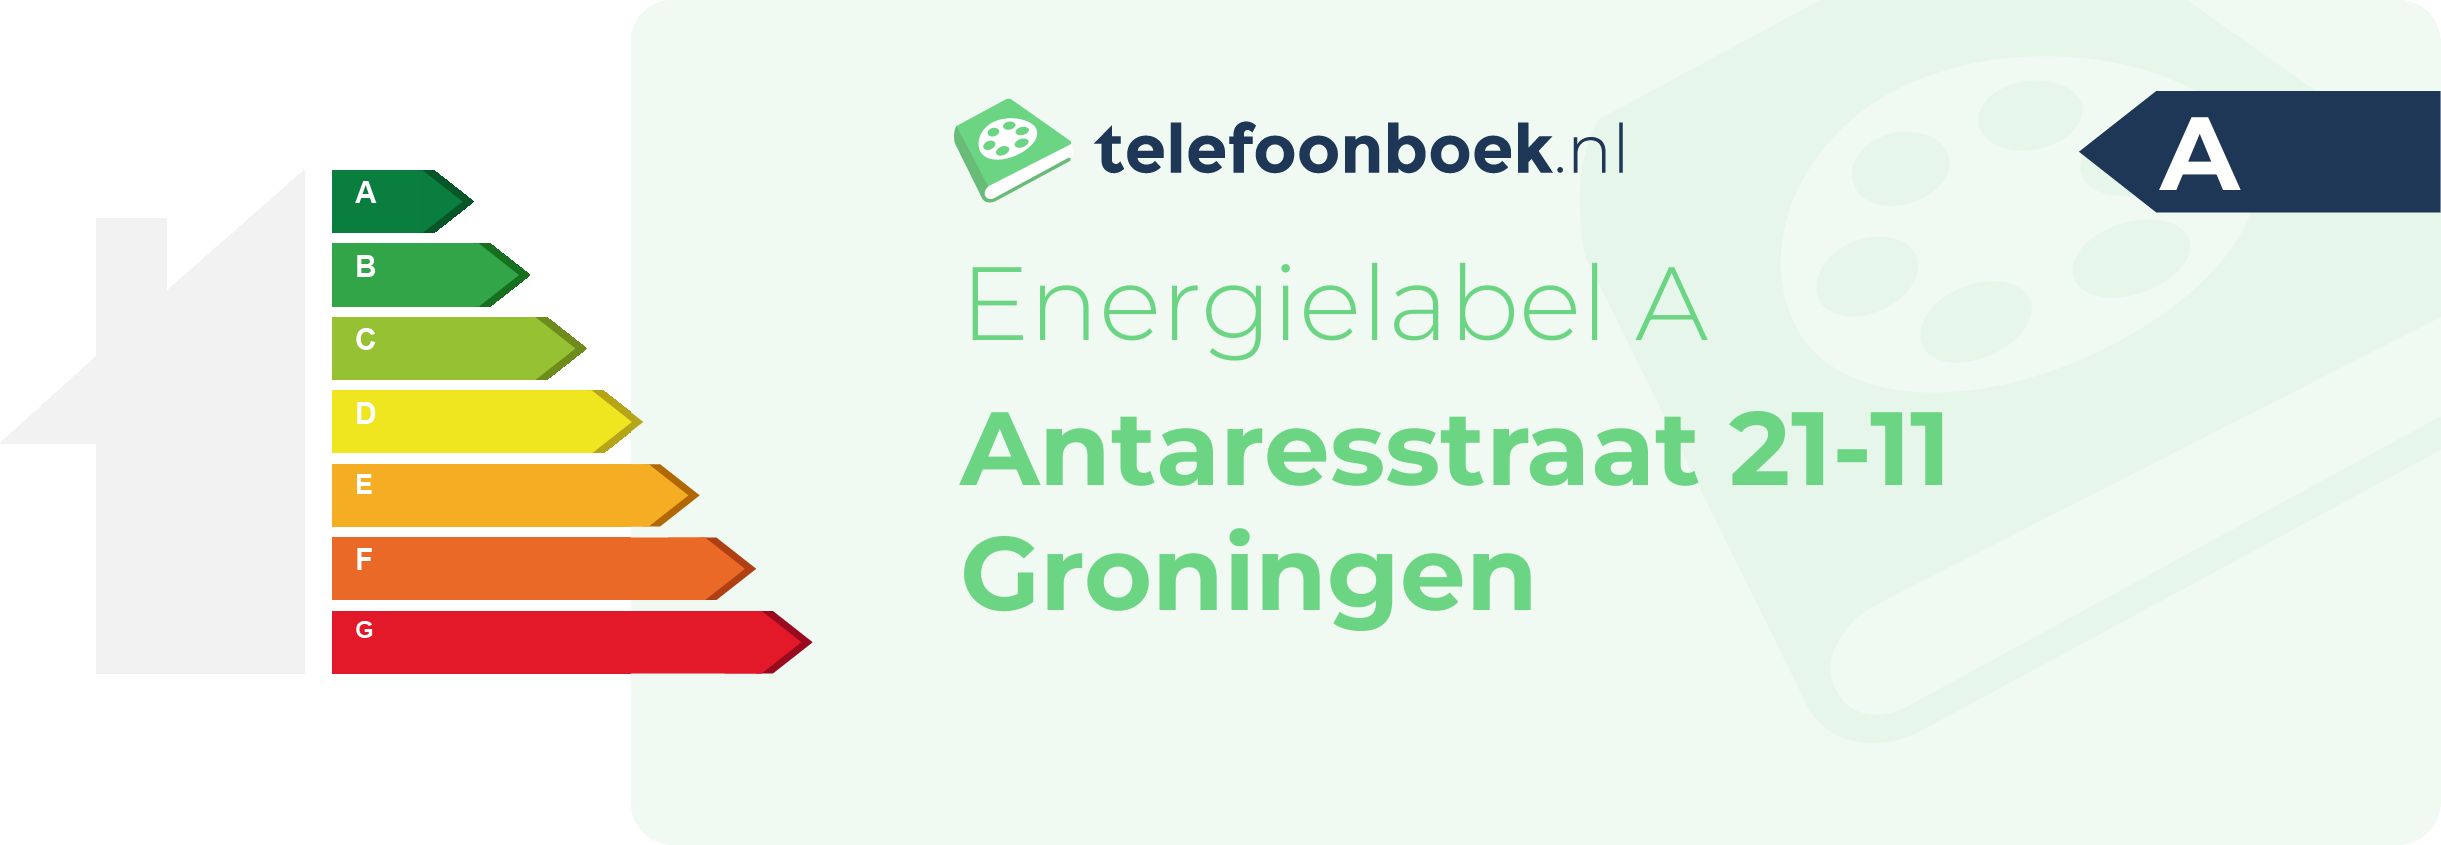 Energielabel Antaresstraat 21-11 Groningen